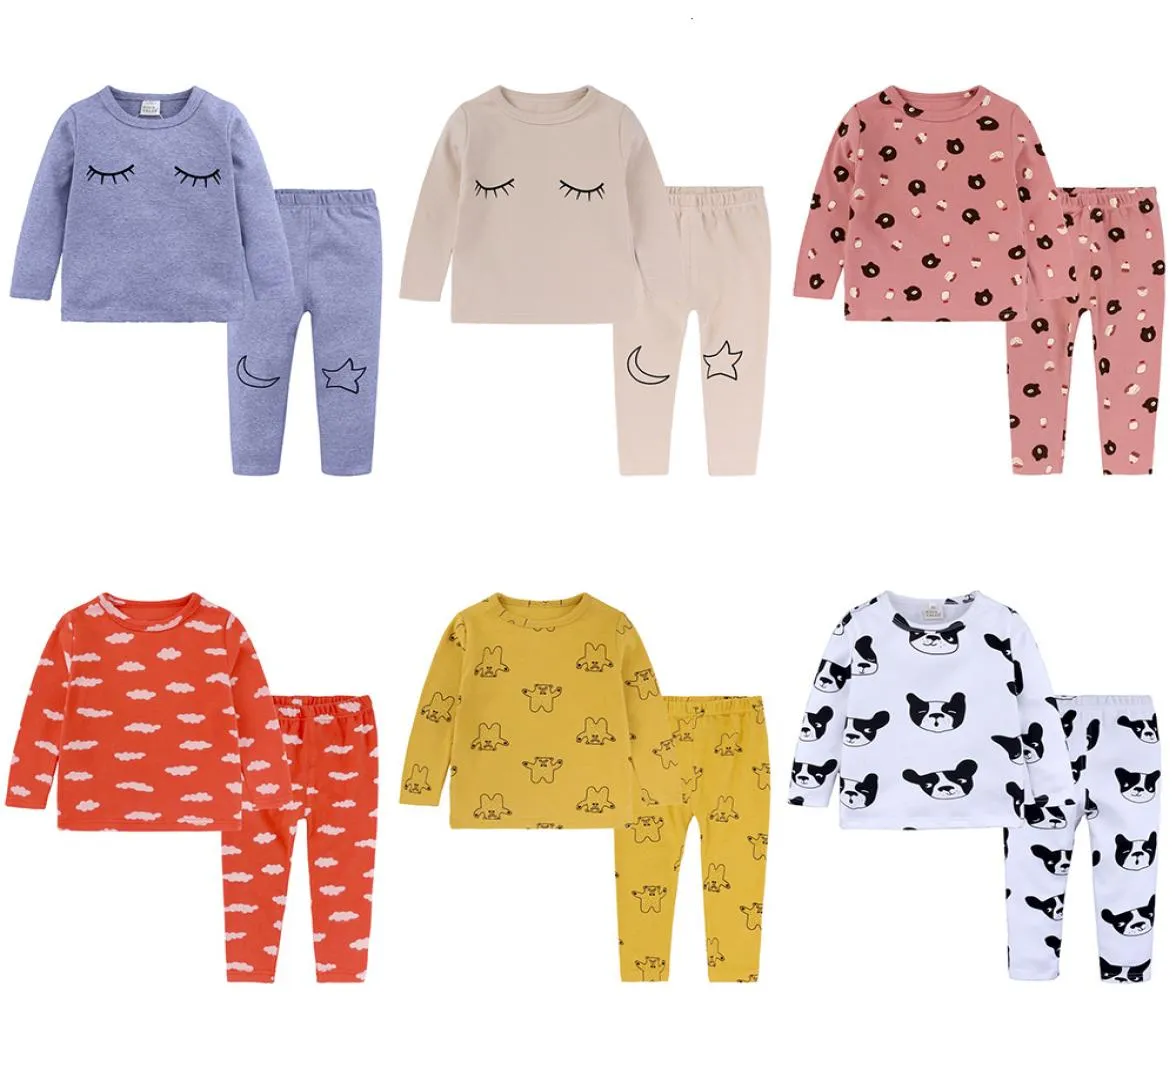 6 kolorów Toddler Baby Boys Girls Pajamas Cartoon Print Pężama Zestaw dziecięcy nocne rękaw T Shirt Pants Kids Sleepearmx1901254830